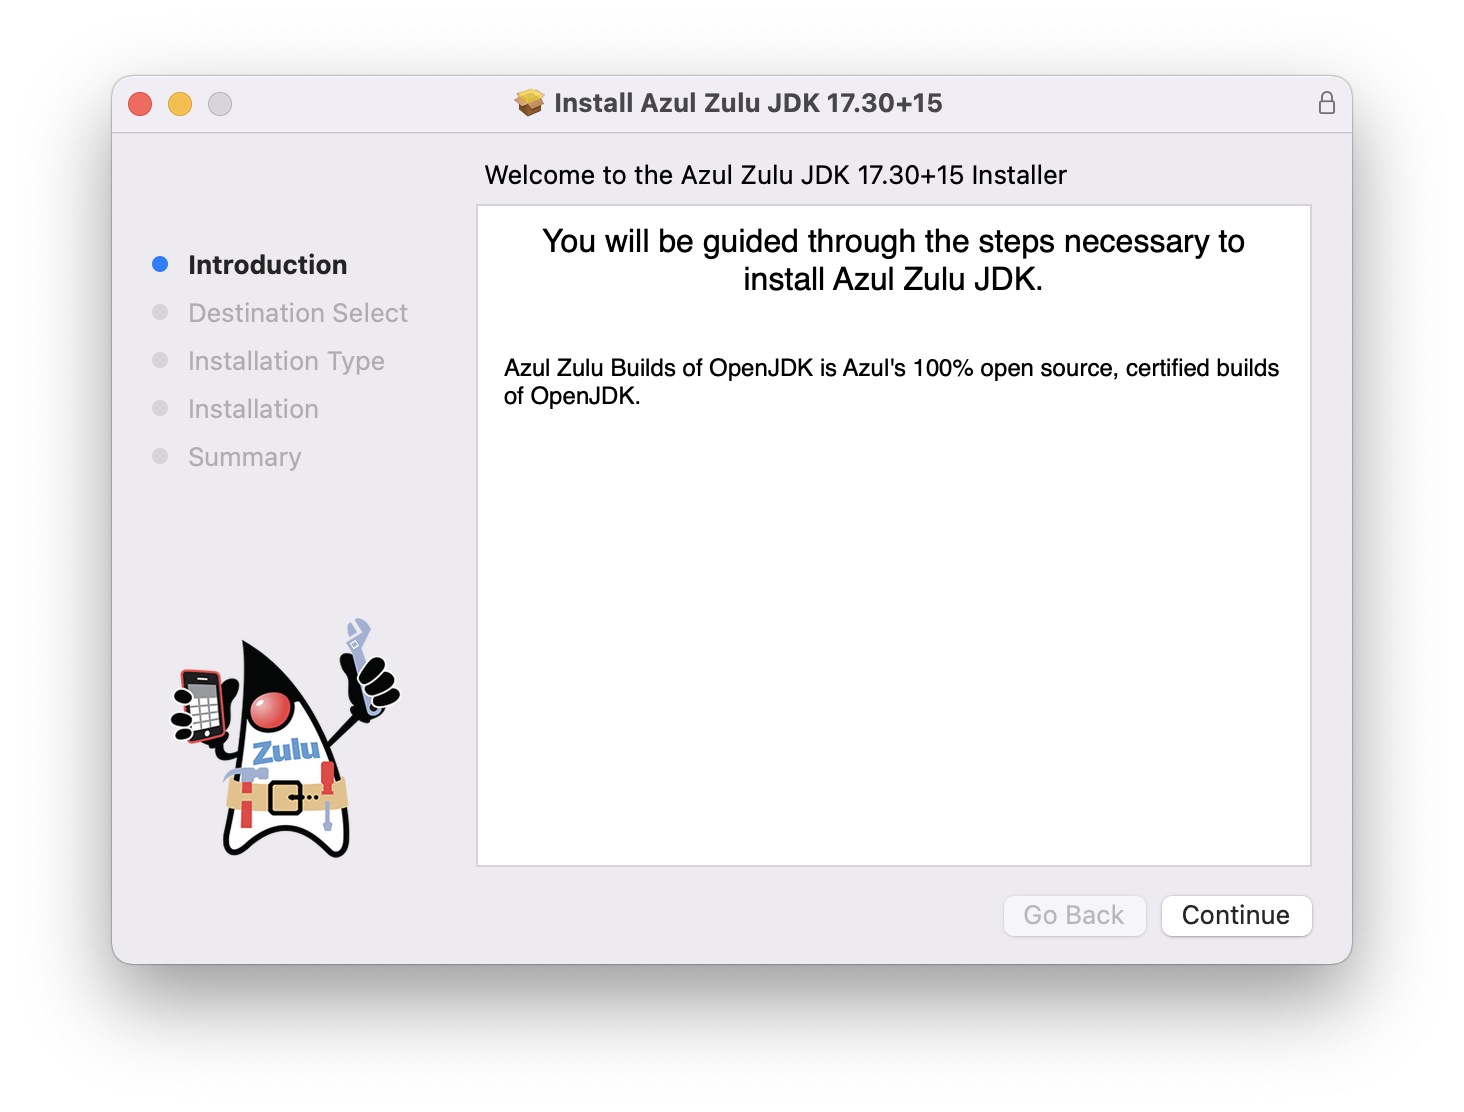 Screenshot of the installer of Azul Zulu JDK